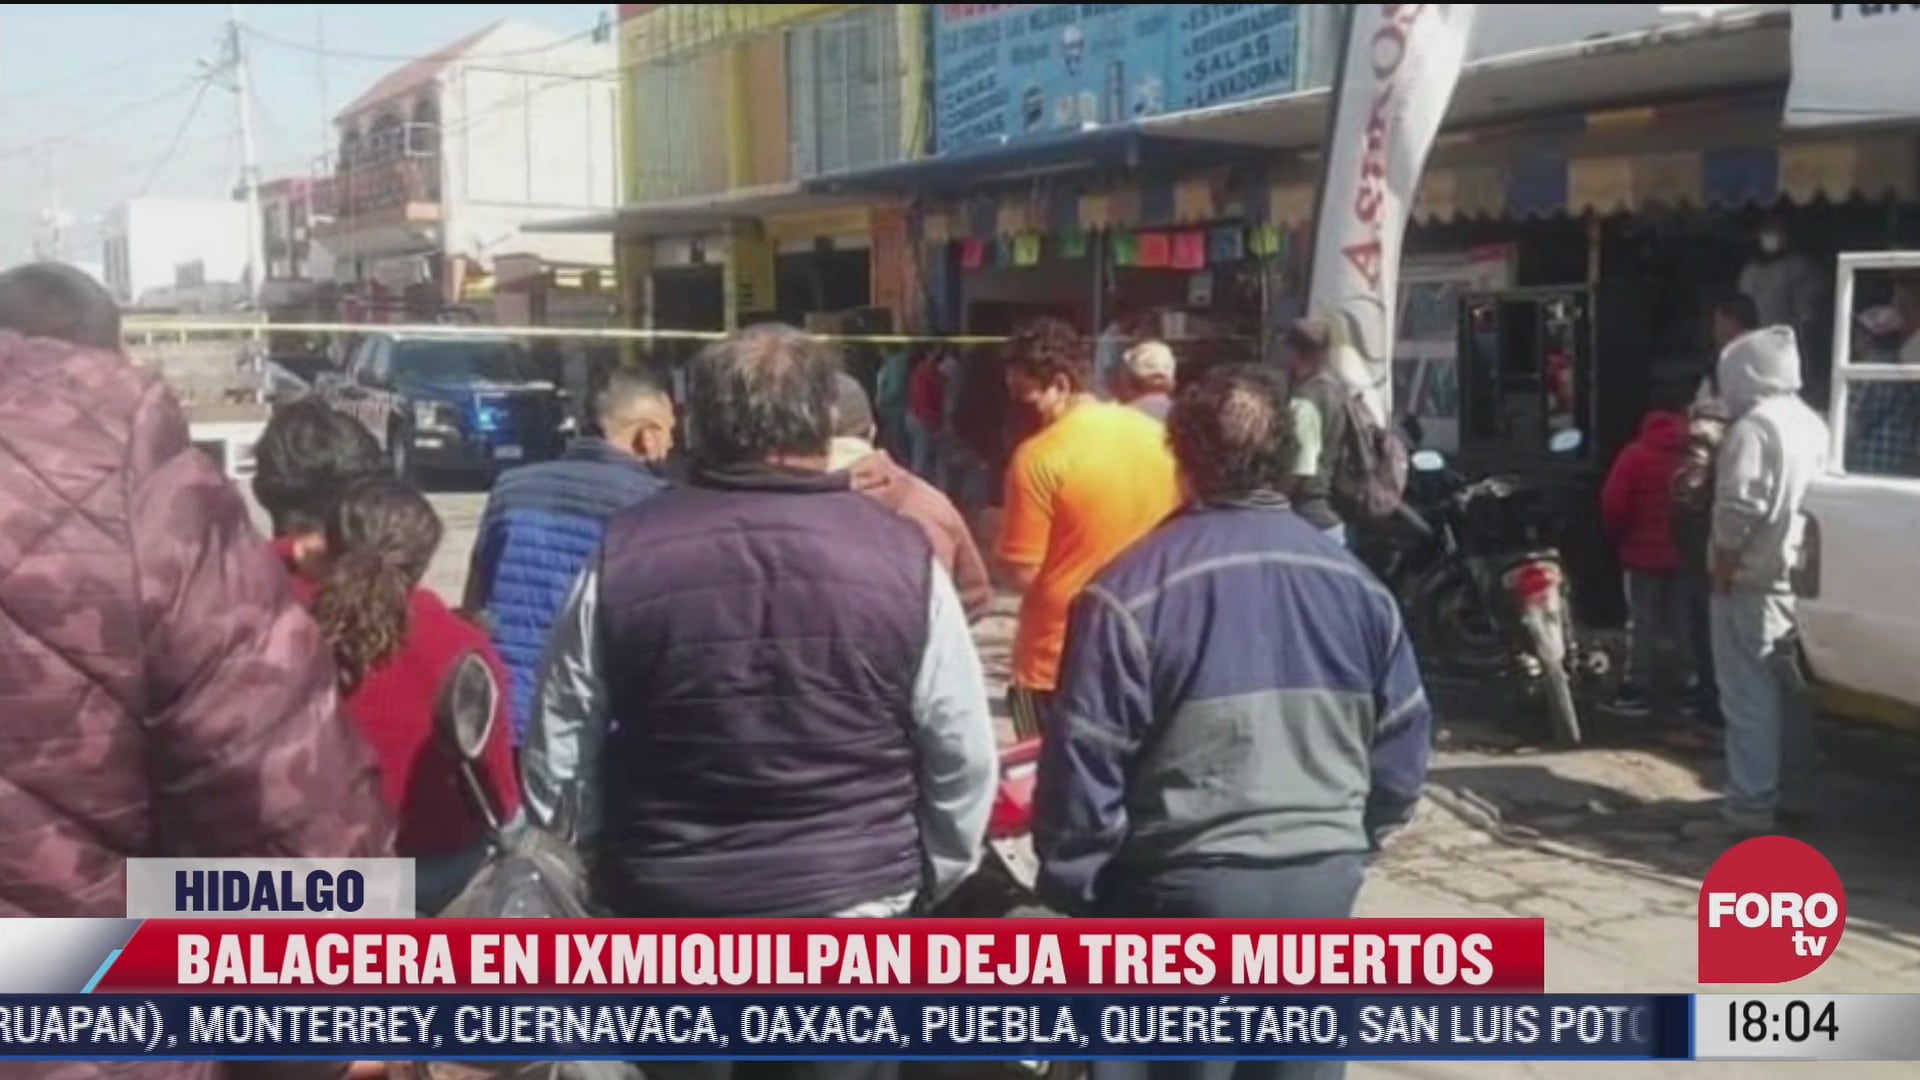 balacera en ixmiquilpan deja 3 muertos en hidalgo